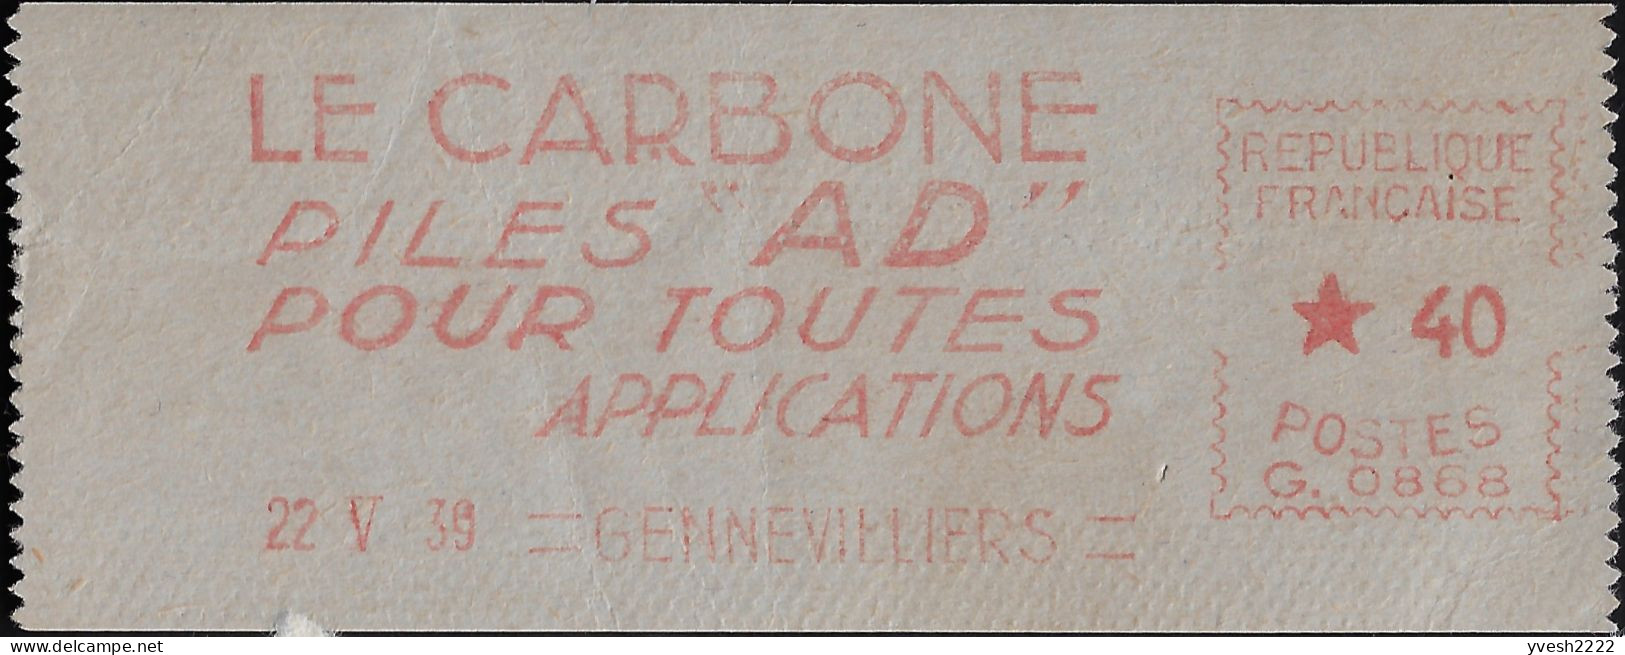 France 1939. Empreinte De Machine à Affranchir. Le Carbone, Piles AD Pour Toutes Applications - Electricity